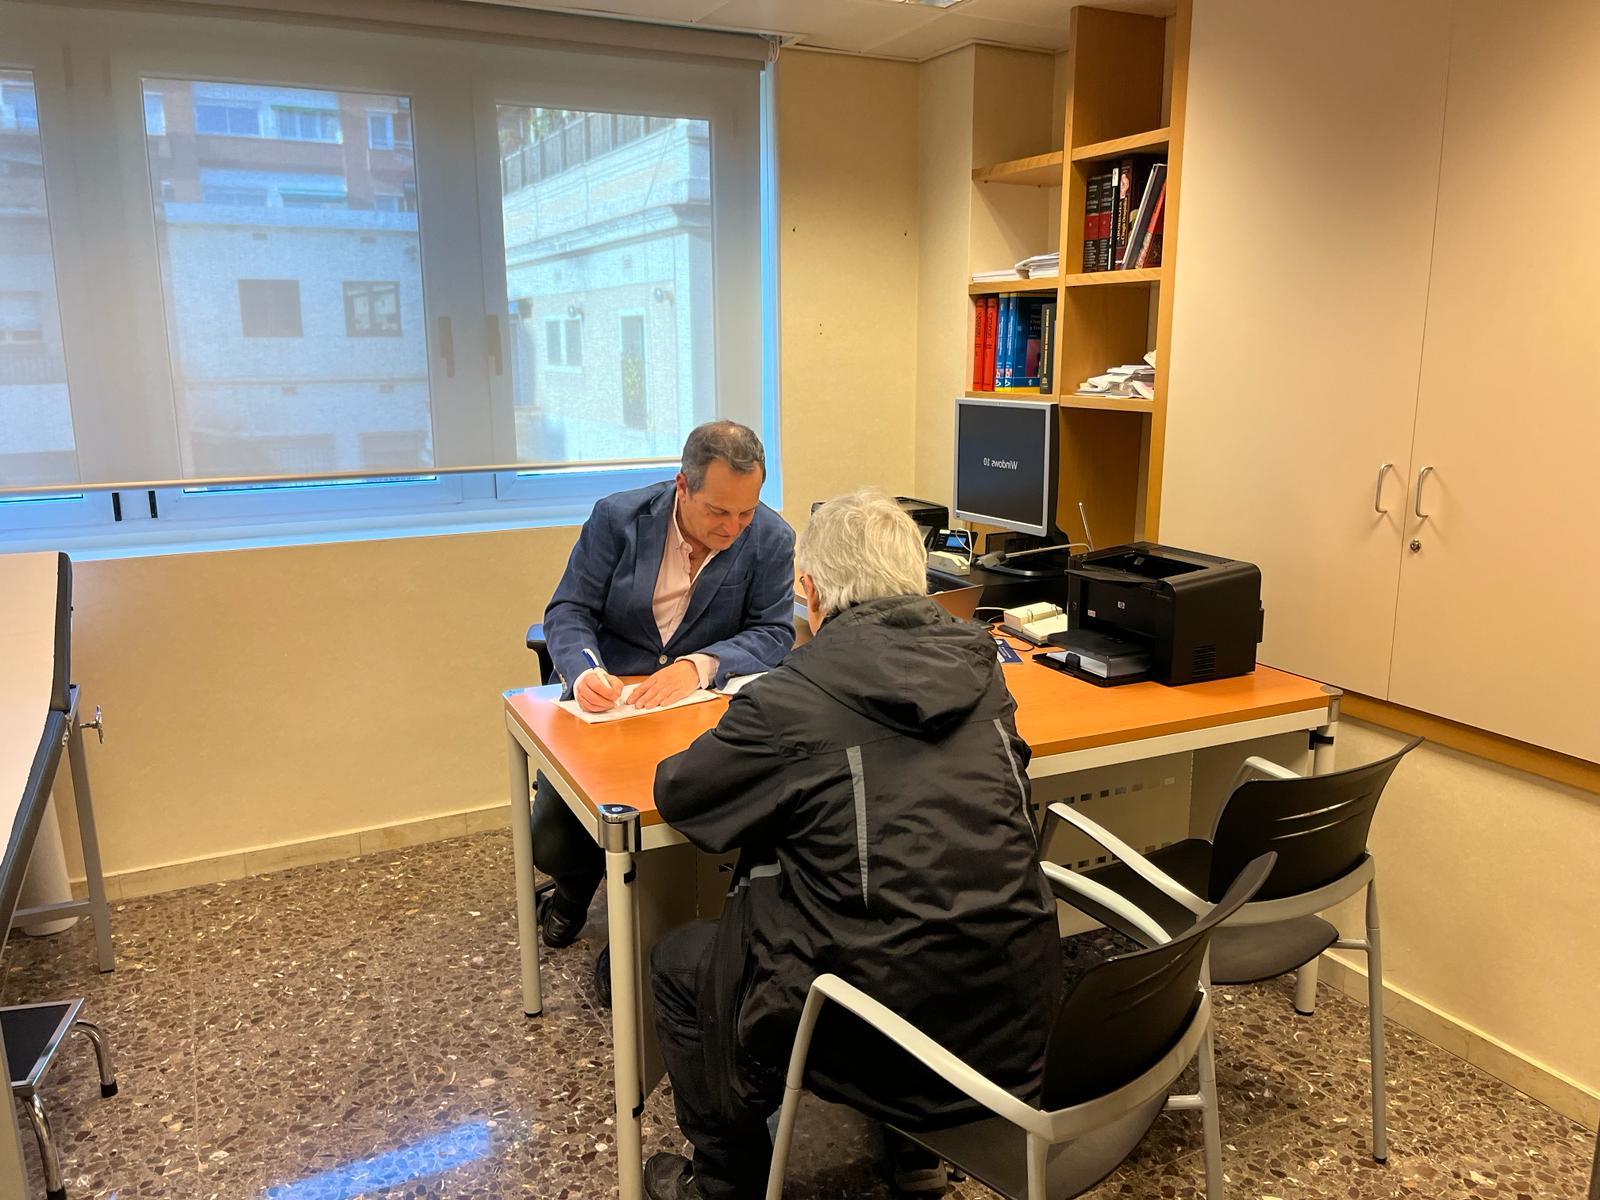 Un día de consulta con el Dr. Antonio Vázquez en la Clínica del Remei Empatía, tecnología avanzada y cuidado personalizado en Barcelona